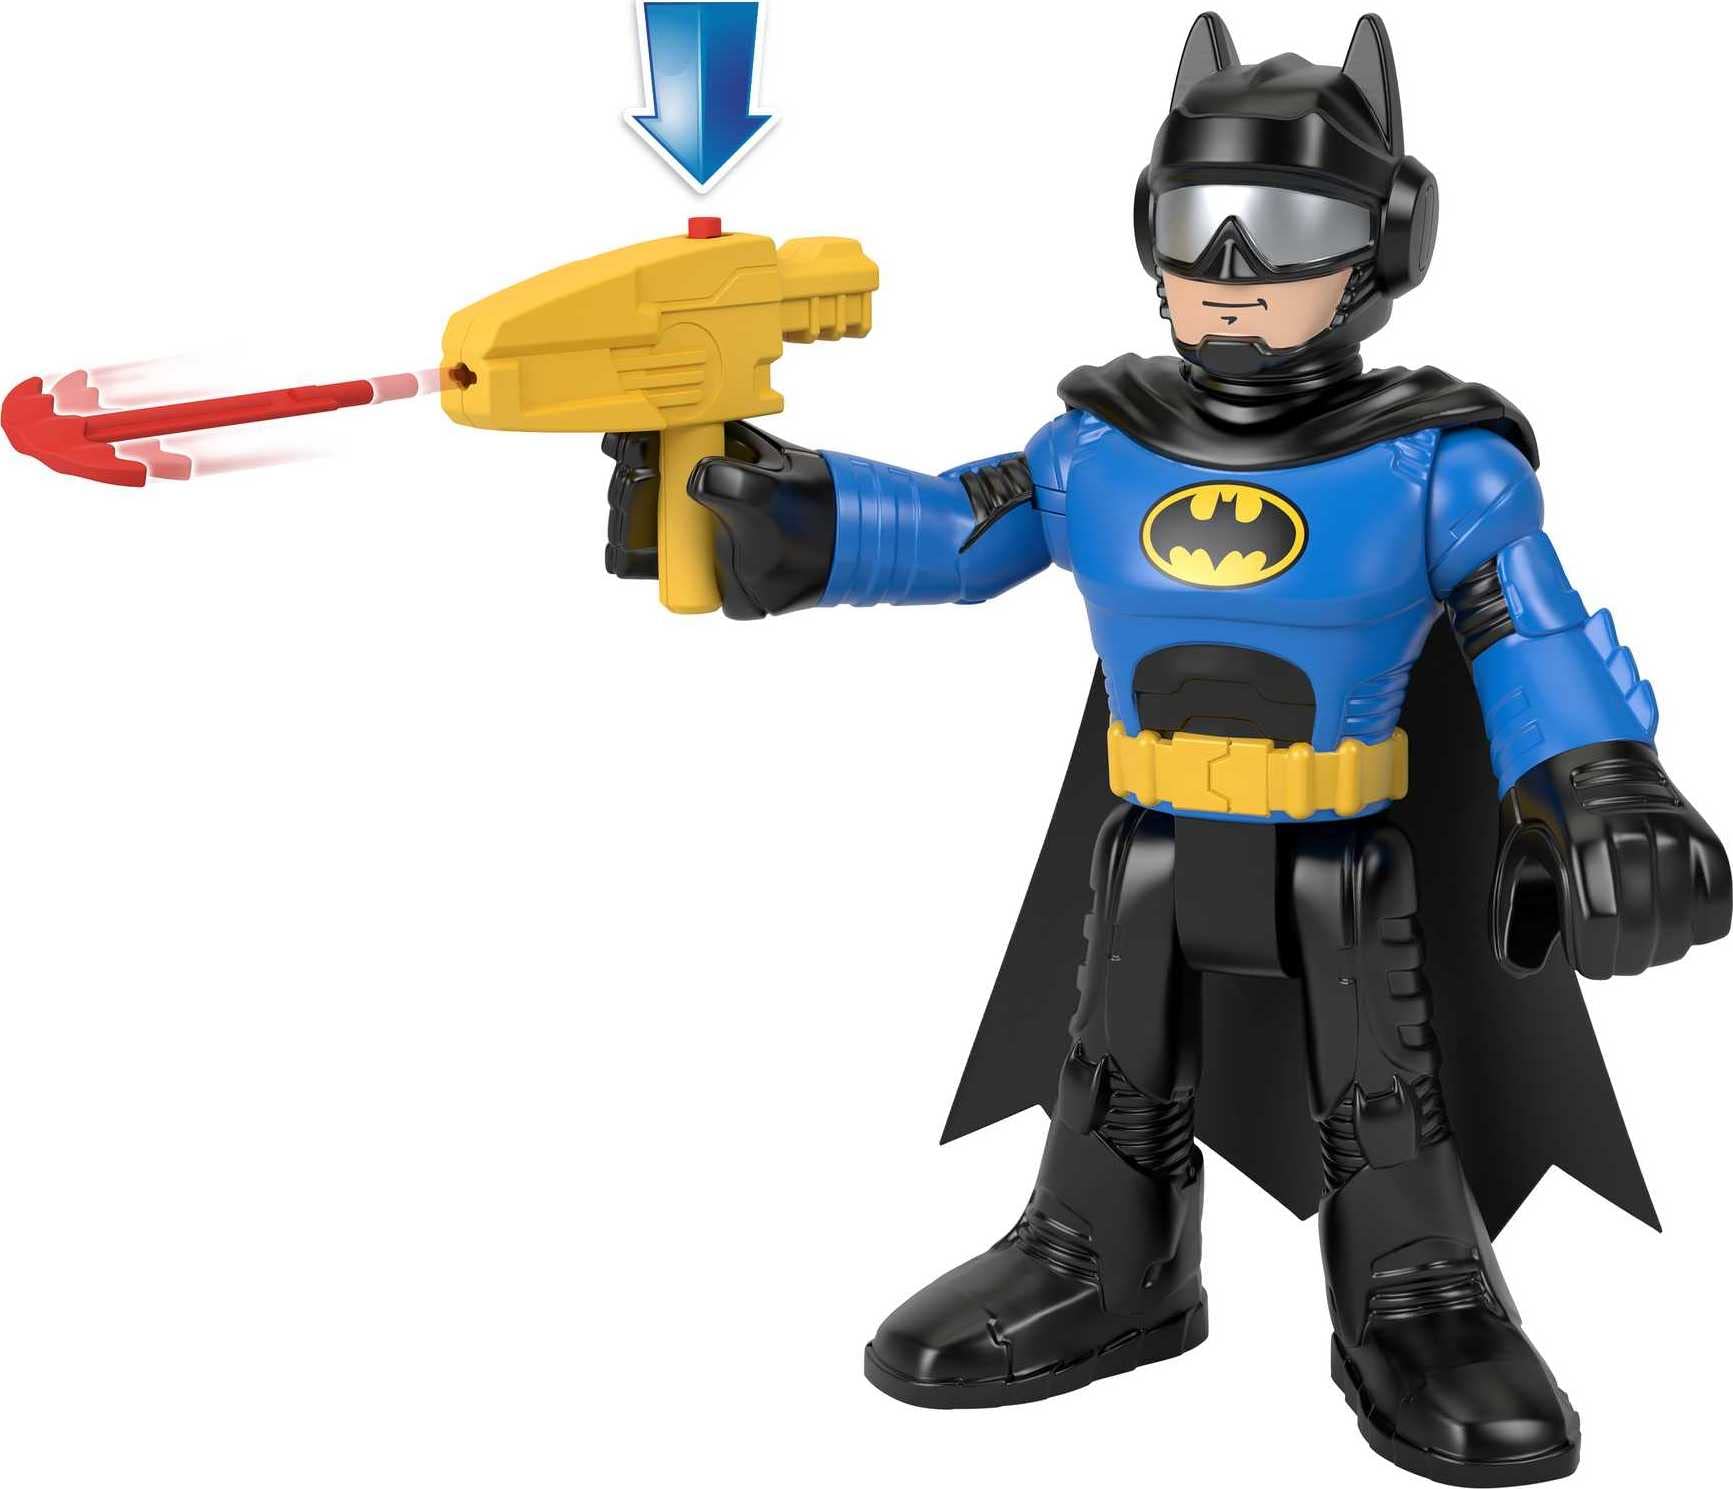 Imaginext DC Super Friends Batman Toys, XL Batcycle with Projectile Launcher & XL Batman Figure, Each 10 Inches, Ages 3+ Years